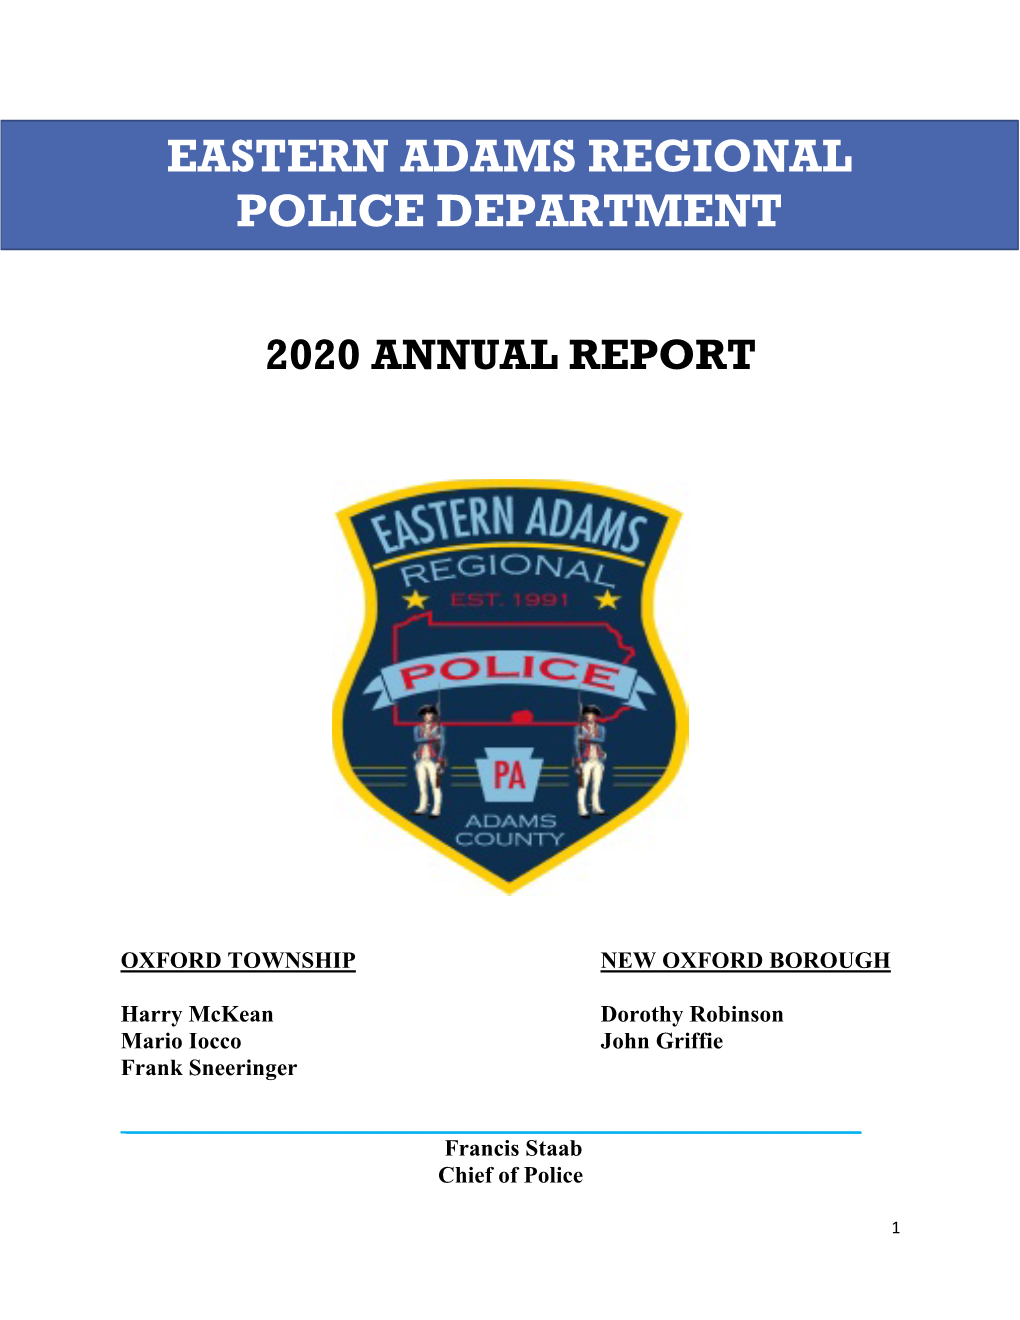 Eastern Adams Regional Police Department